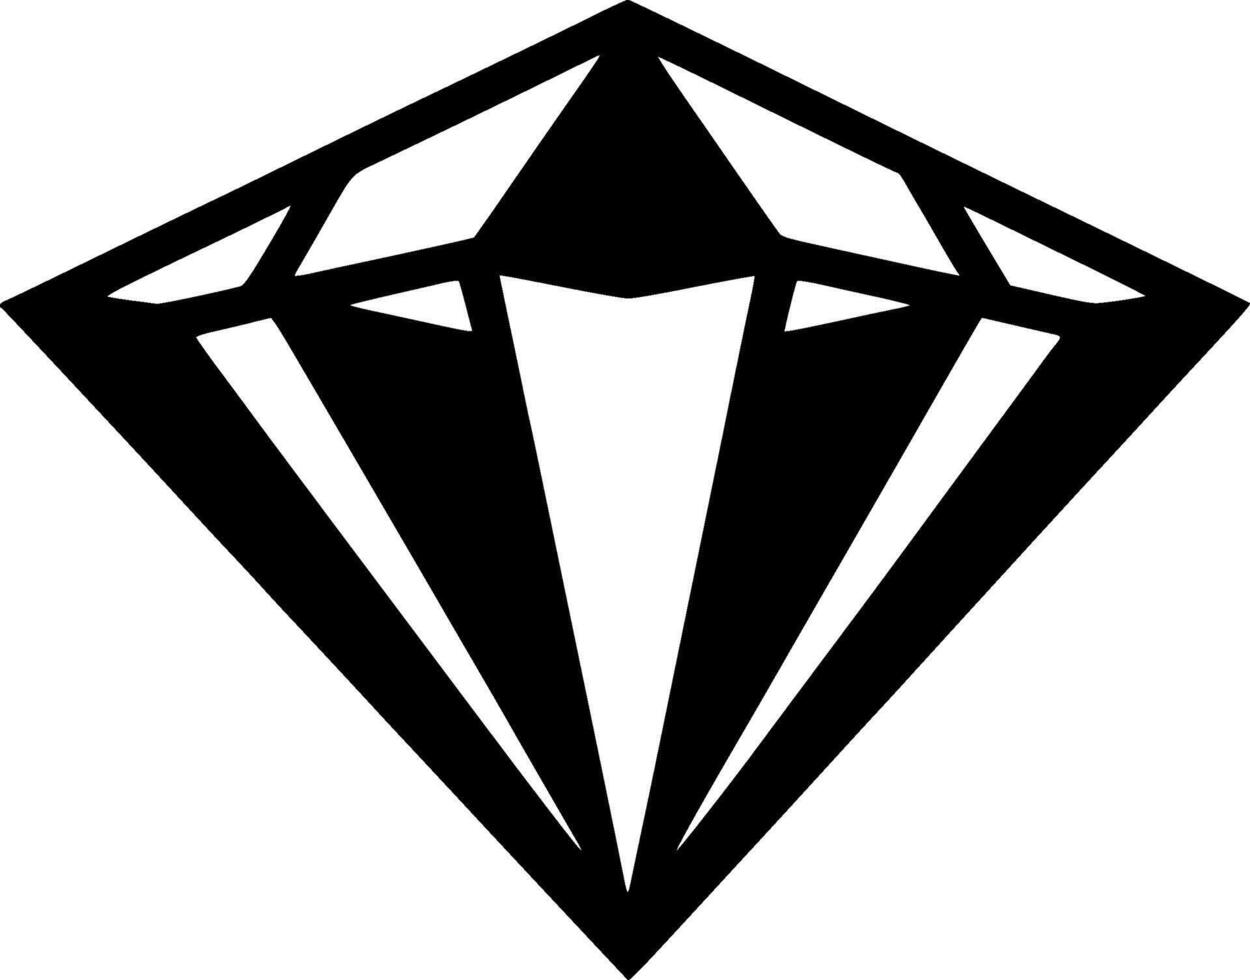 Diamant, minimalistisch und einfach Silhouette - - Vektor Illustration